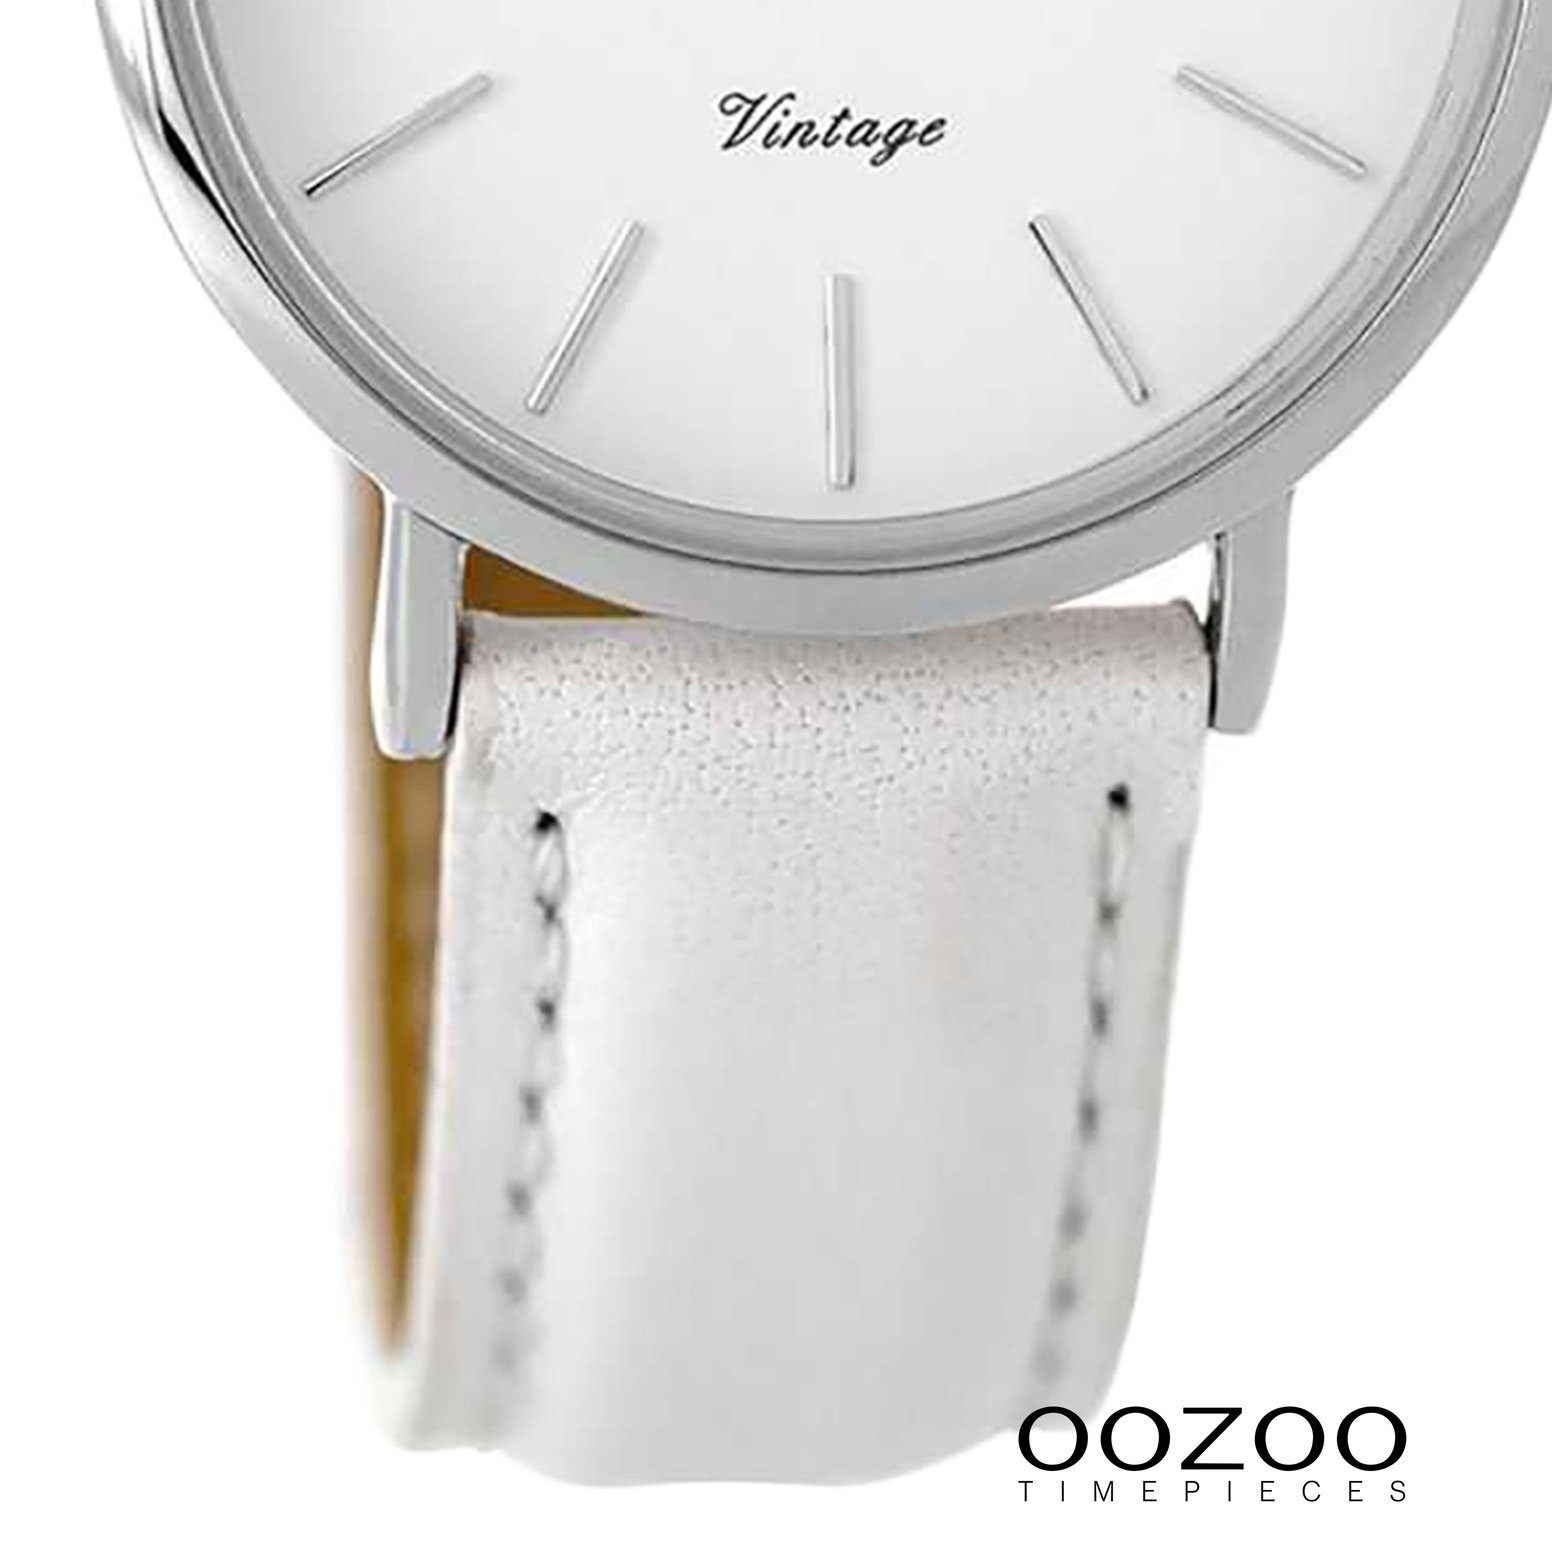 mittel Fashion Lederarmband Damenuhr Armbanduhr 32mm), Oozoo rund, Quarzuhr weiß, (ca. OOZOO Damen weiß,